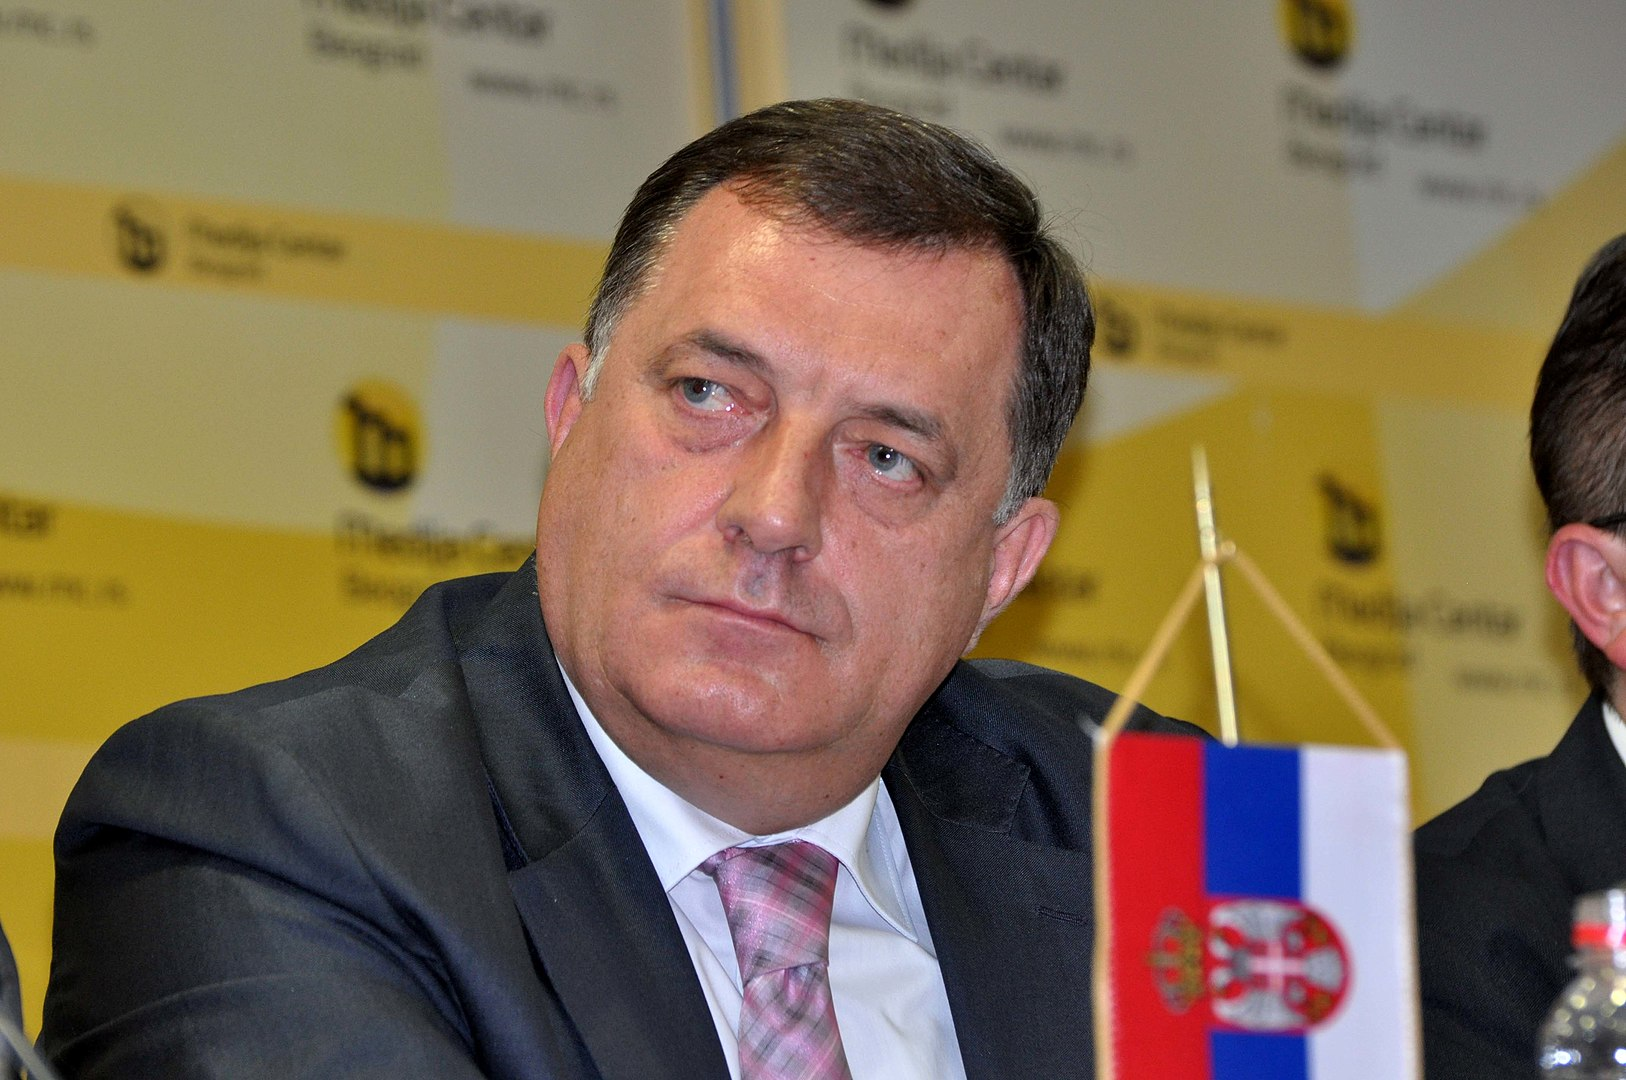 Republika Srbska sprejela predlog sprememb zakona o spornem grbu, himni in zastavi